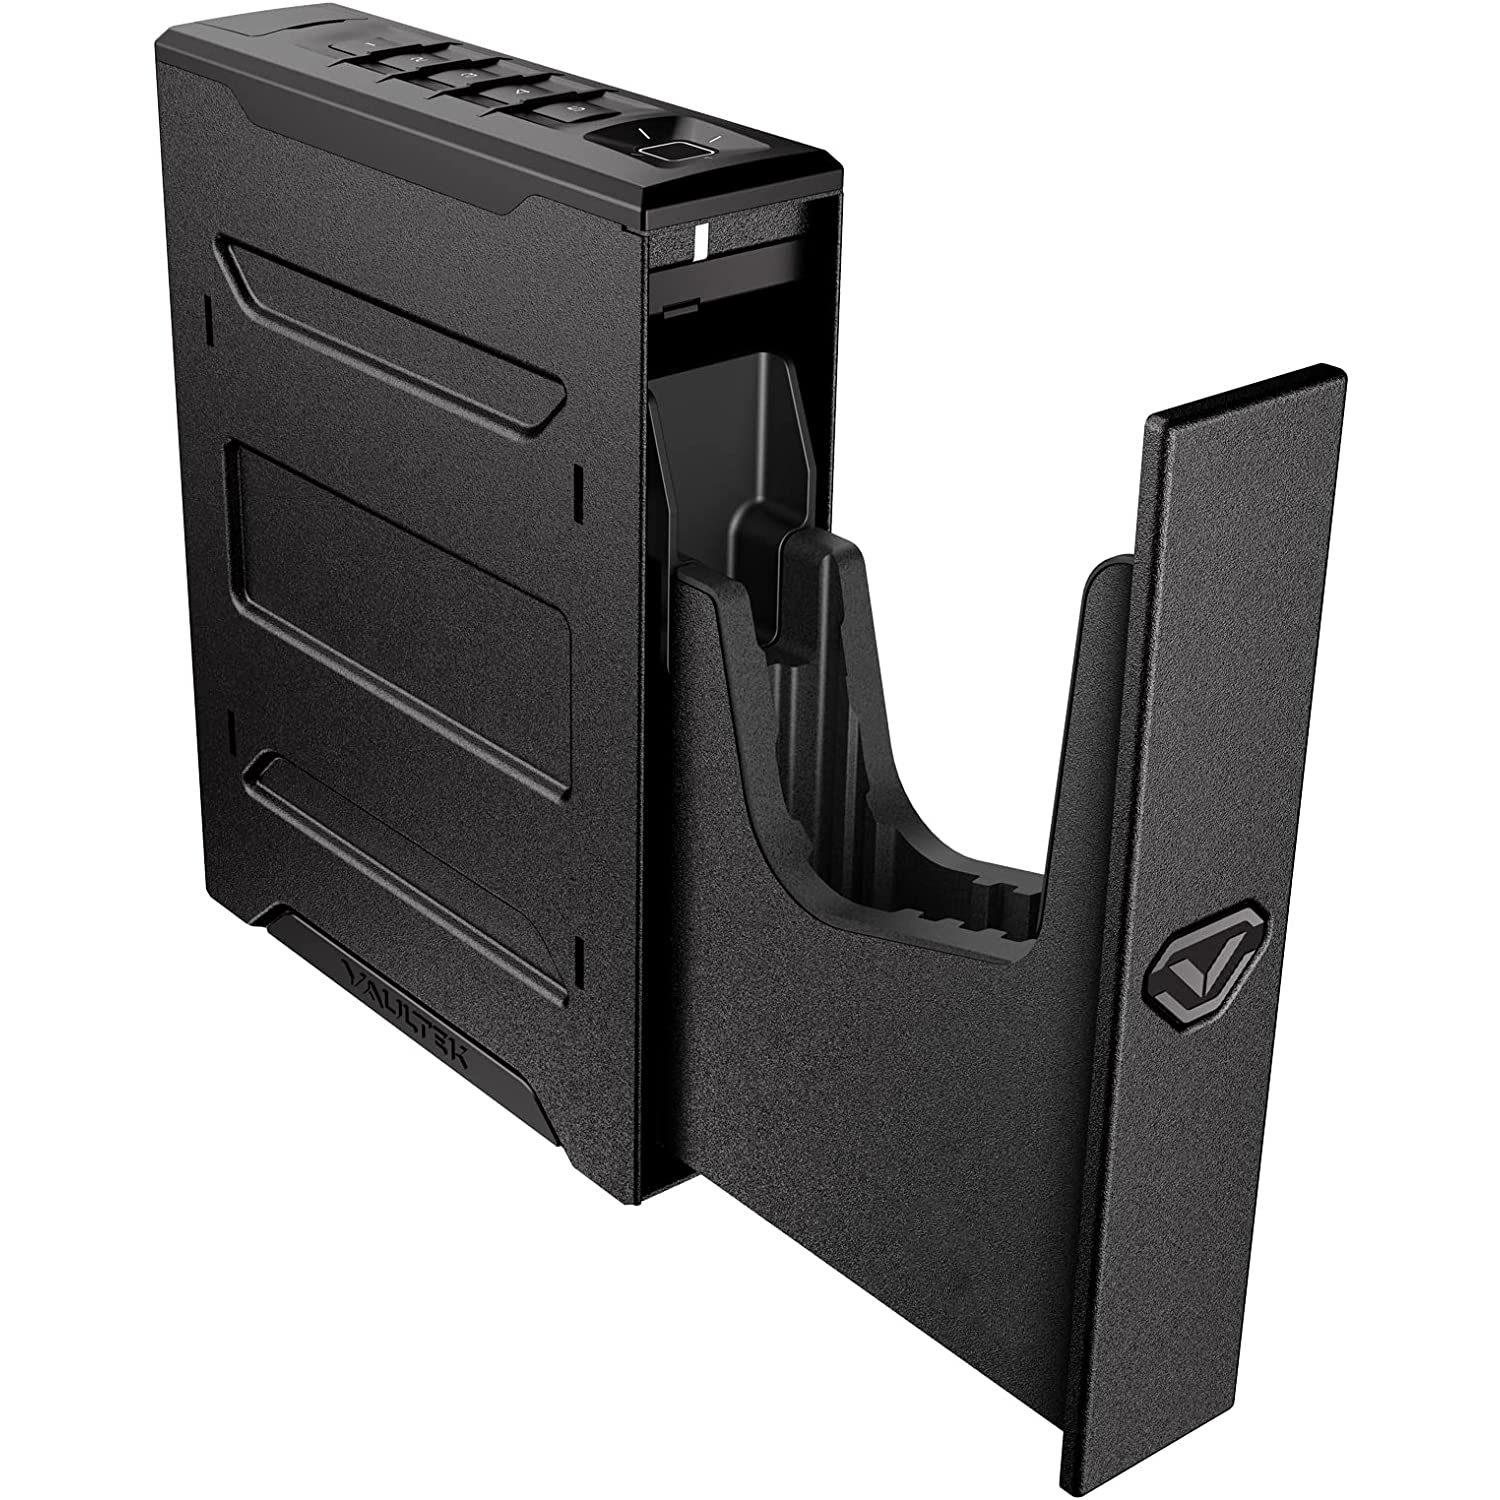 Vaultek - nsl20i quick access biometric and wifi slider gun safe - MODLOCK